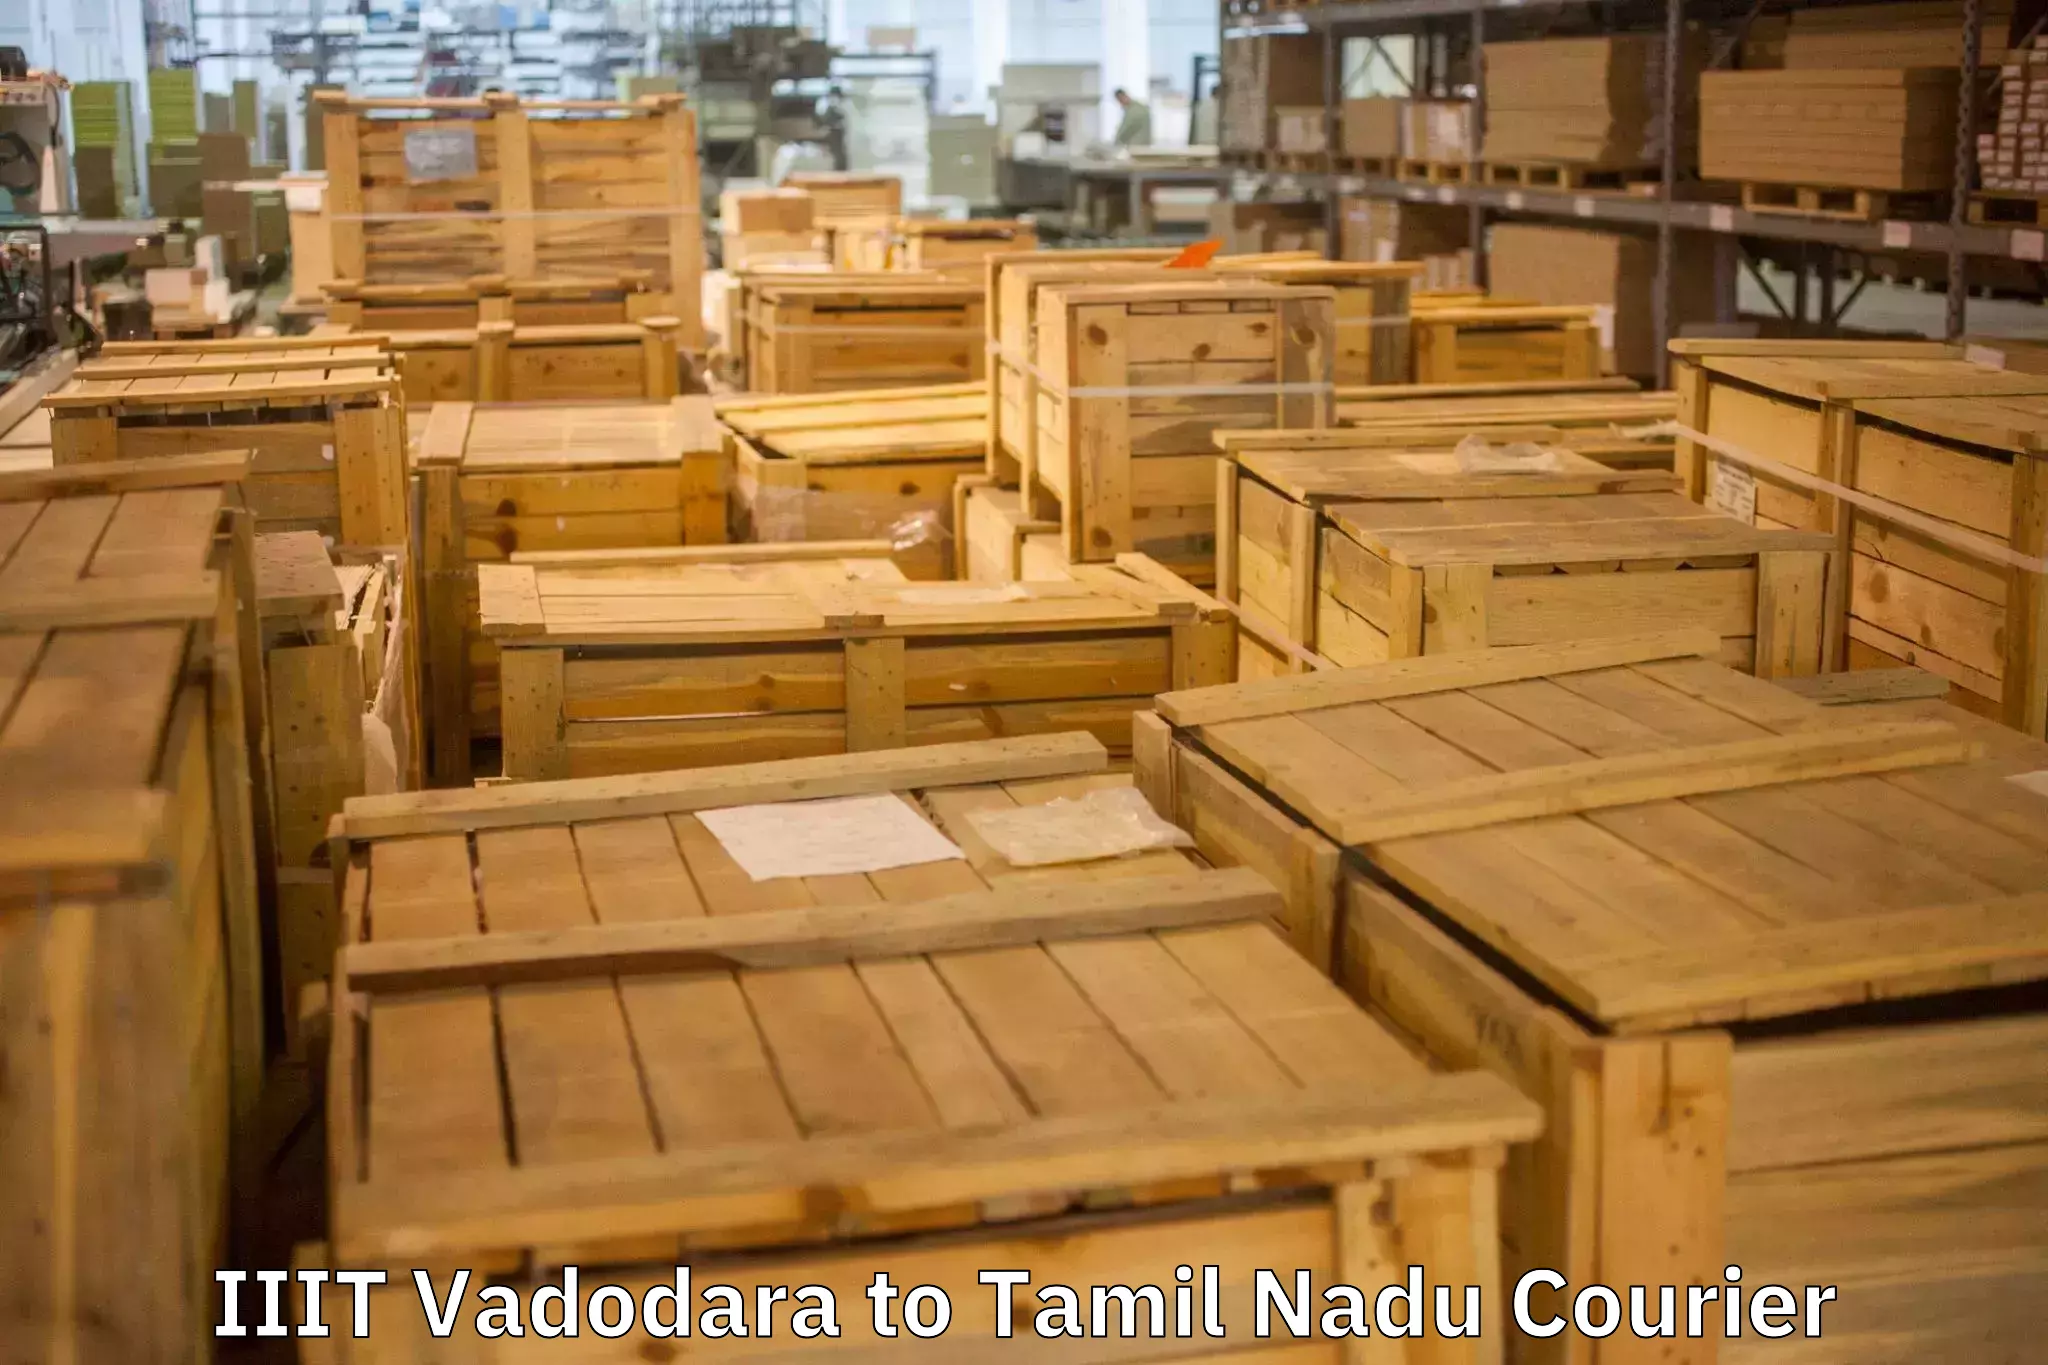 Reliable home shifting IIIT Vadodara to Thiruvadanai